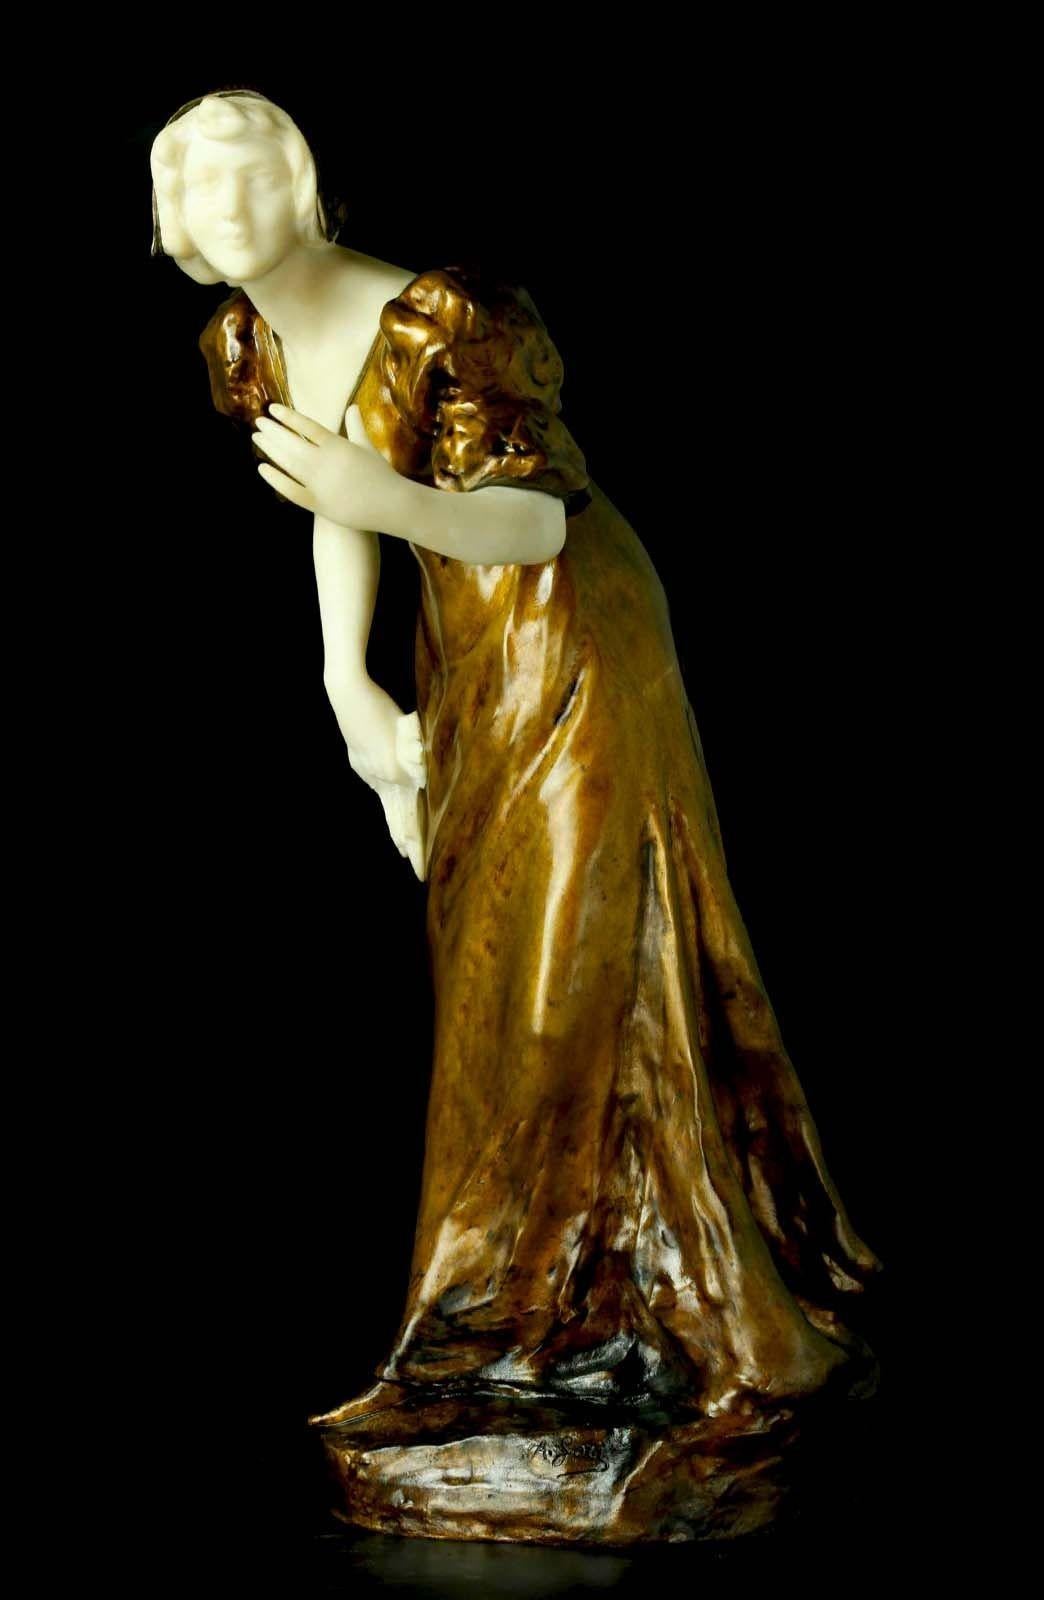 Verführerische Skulptur aus vergoldeter Bronze und Marmor von Affortunato Gory, die eine schreitende Dame in traditioneller Kleidung darstellt, die auch ein Handtuch zu ergreifen scheint. Hergestellt in Frankreich, ca. 1920er Jahre.
Signiert 